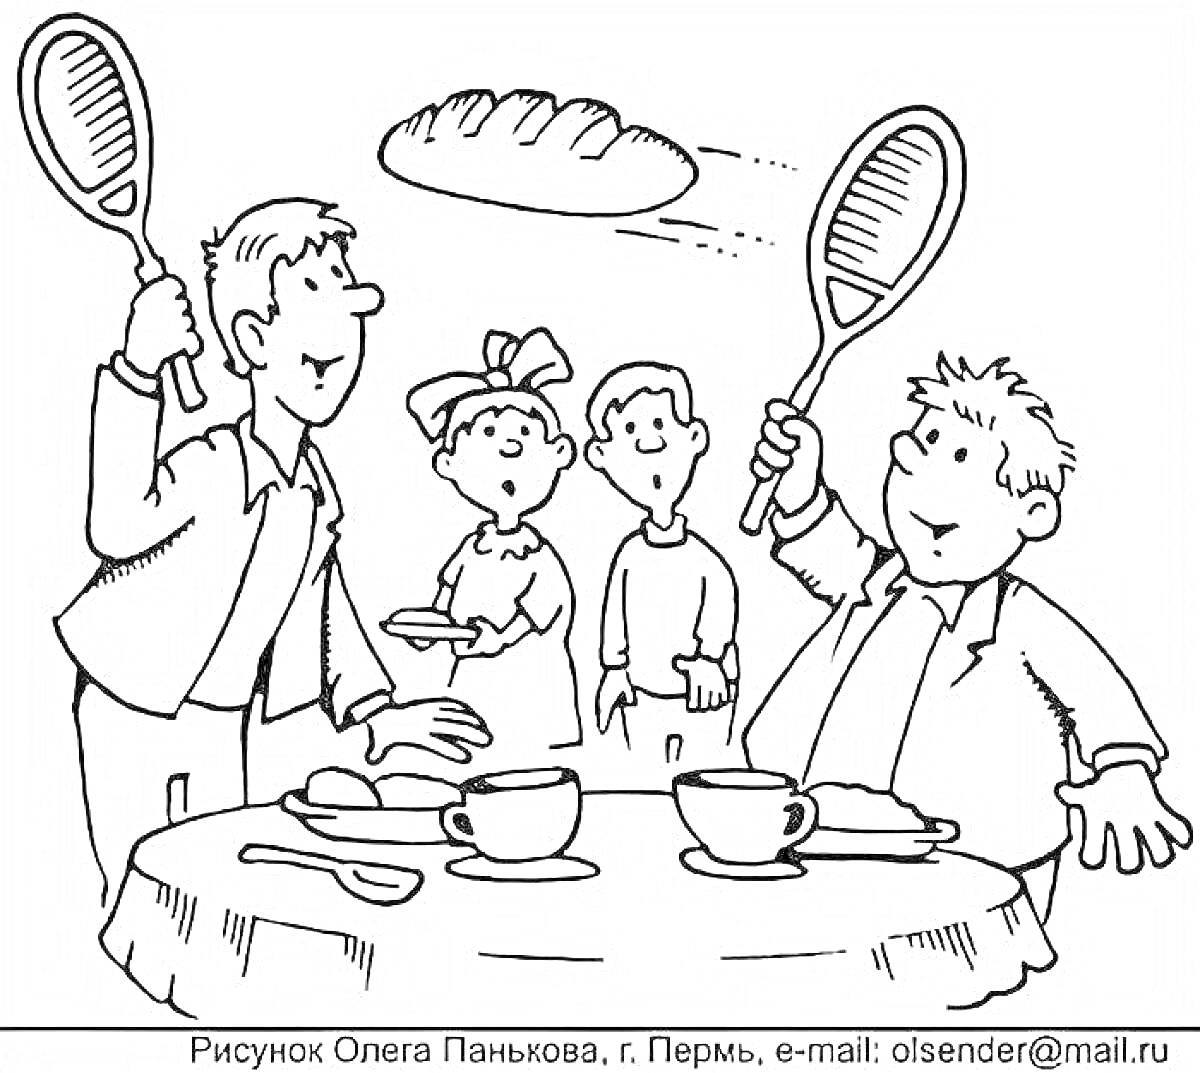 Двое мужчин за обеденным столом кидаются хлебом, используя теннисные ракетки, двое детей смотрят с удивлением